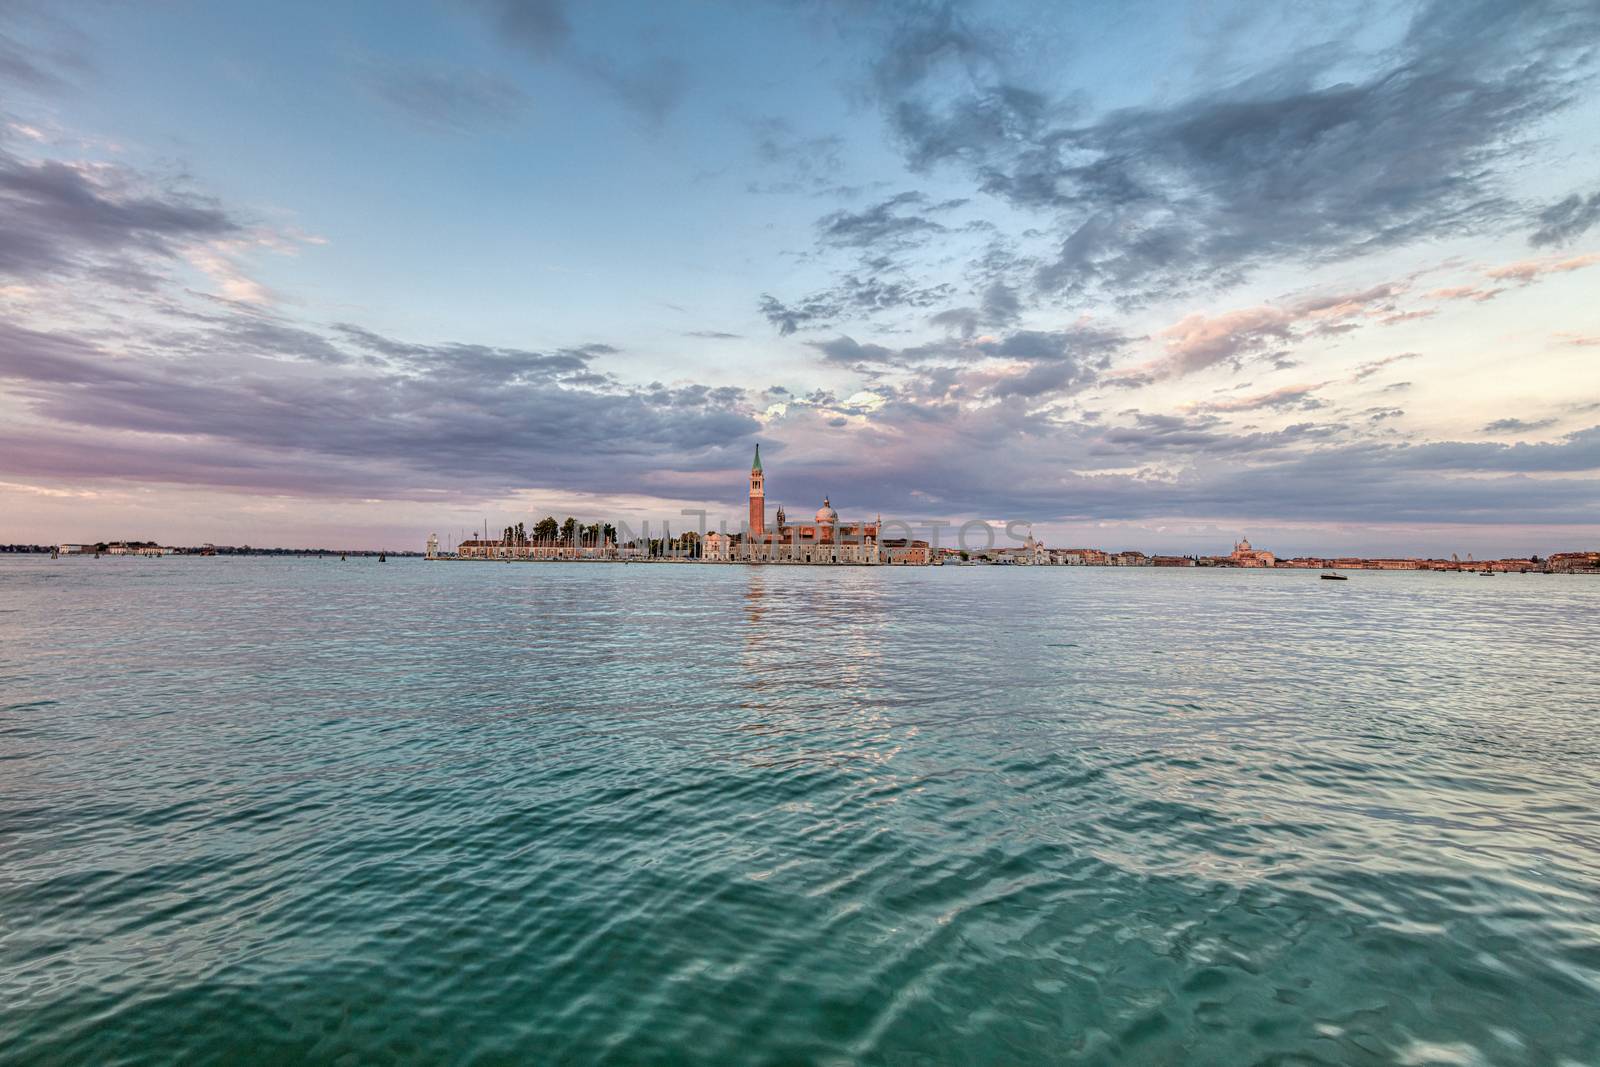 View at San Giorgio Maggiore island, Venice, Italy by mot1963